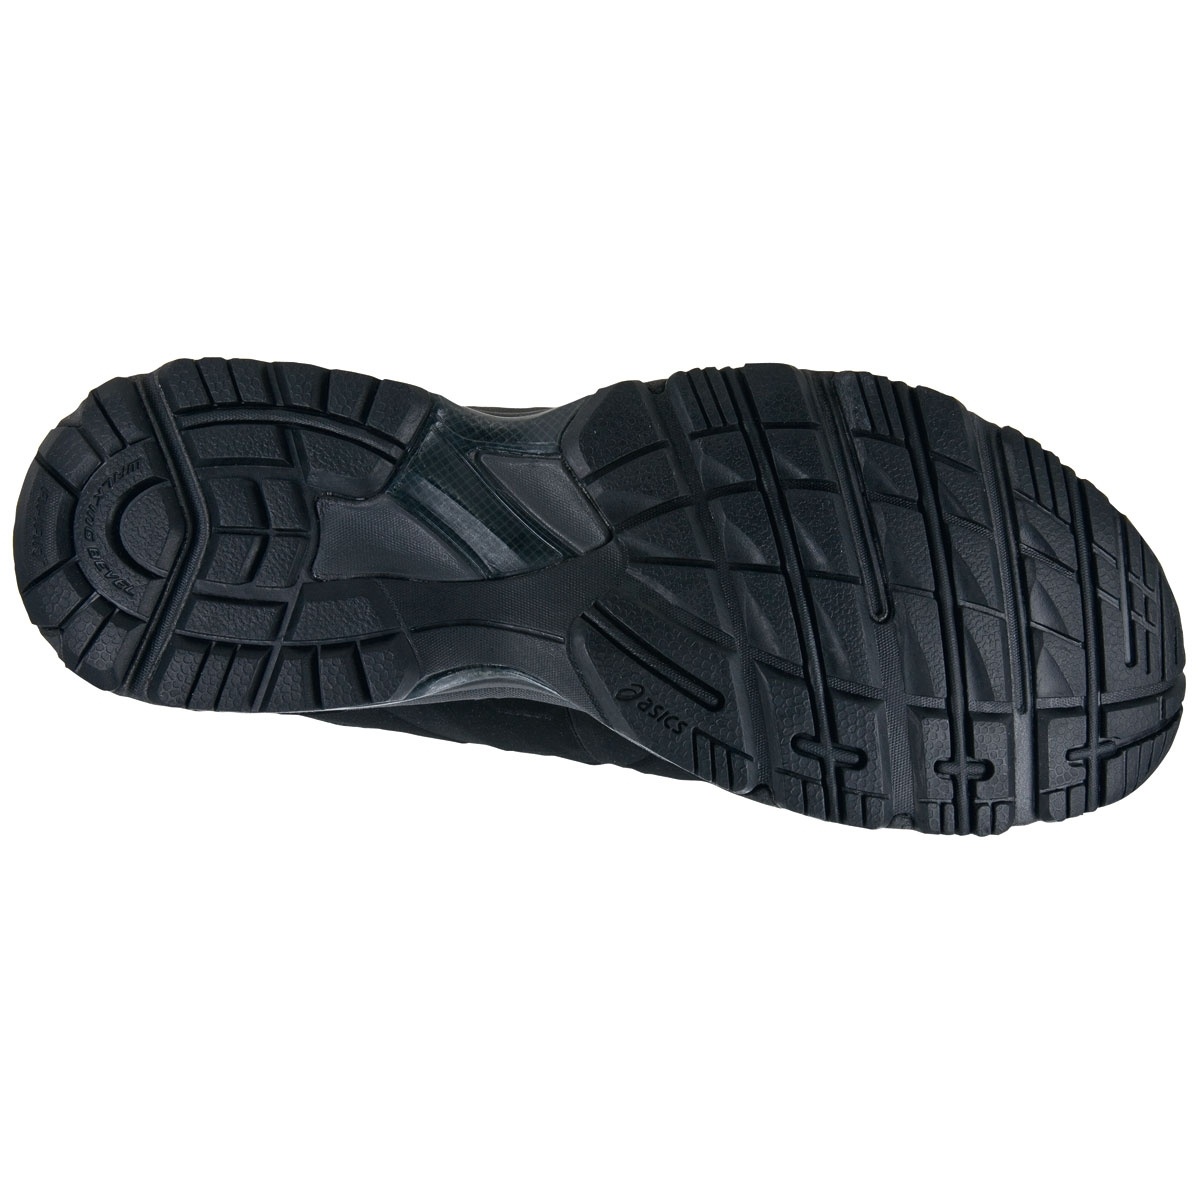 Купить обувь для ходьбы ASICS GEL-NEBRASKA (Q302Y-9078) в "Звезда Олимпа". Мягкие, удобные, износостойкие кроссовки для ходьбы и досуга ASICS GEL-NEBRASKA - заказать с доставкой по РФ.